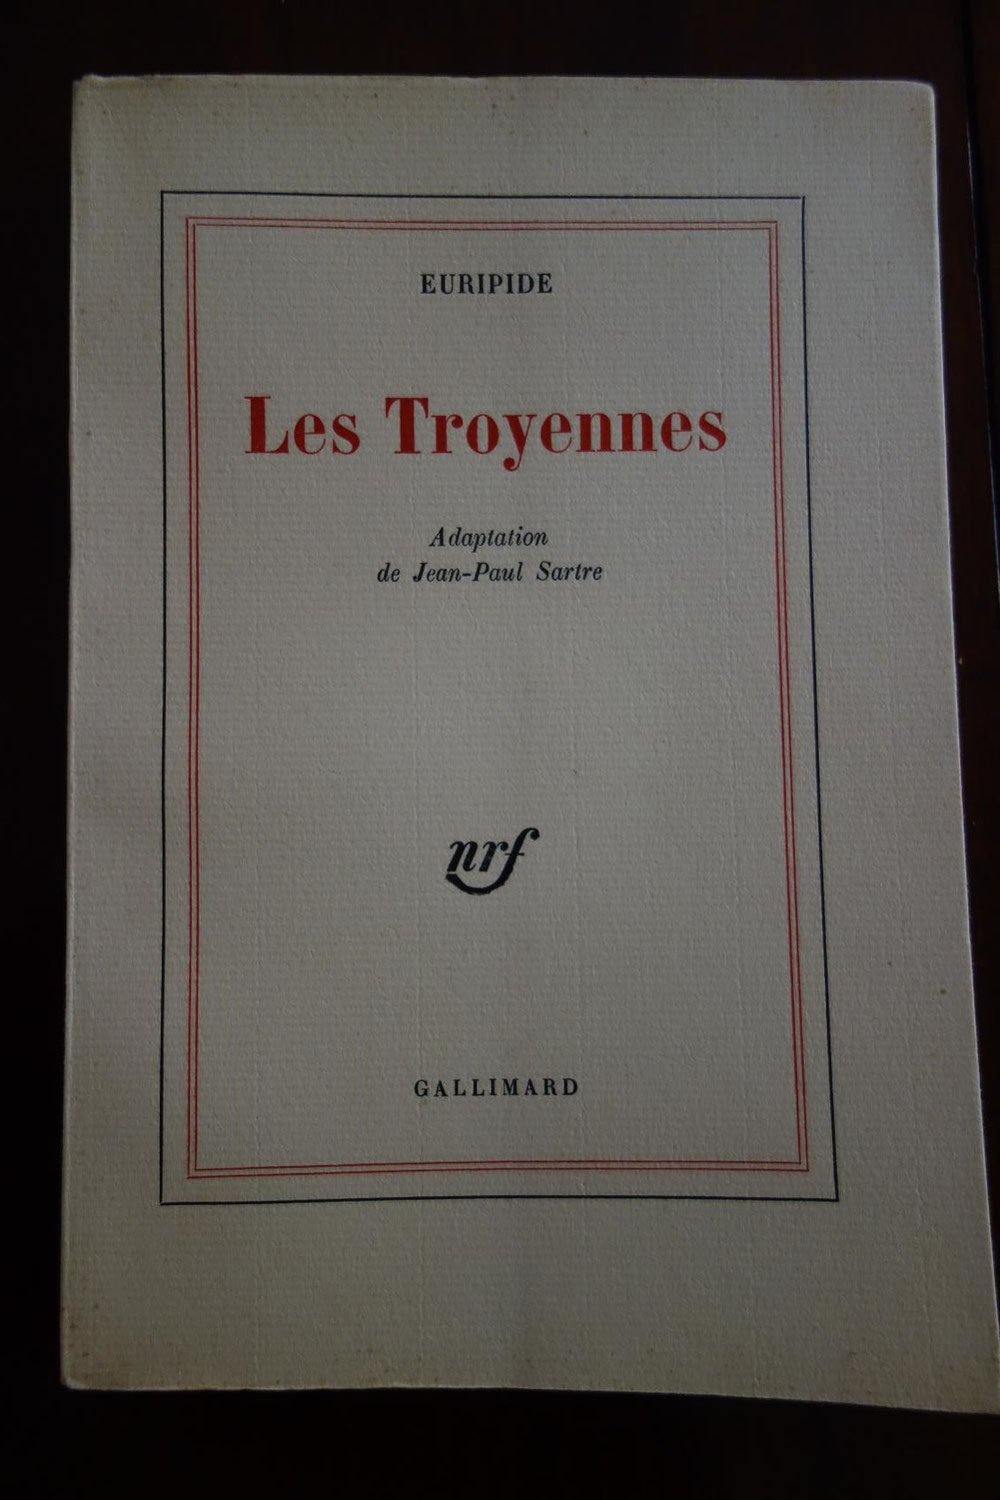 Euripide, adaptation de Jean-Paul Sartre, Les Troyennes, NRF Gallimard, 1965, édition originale